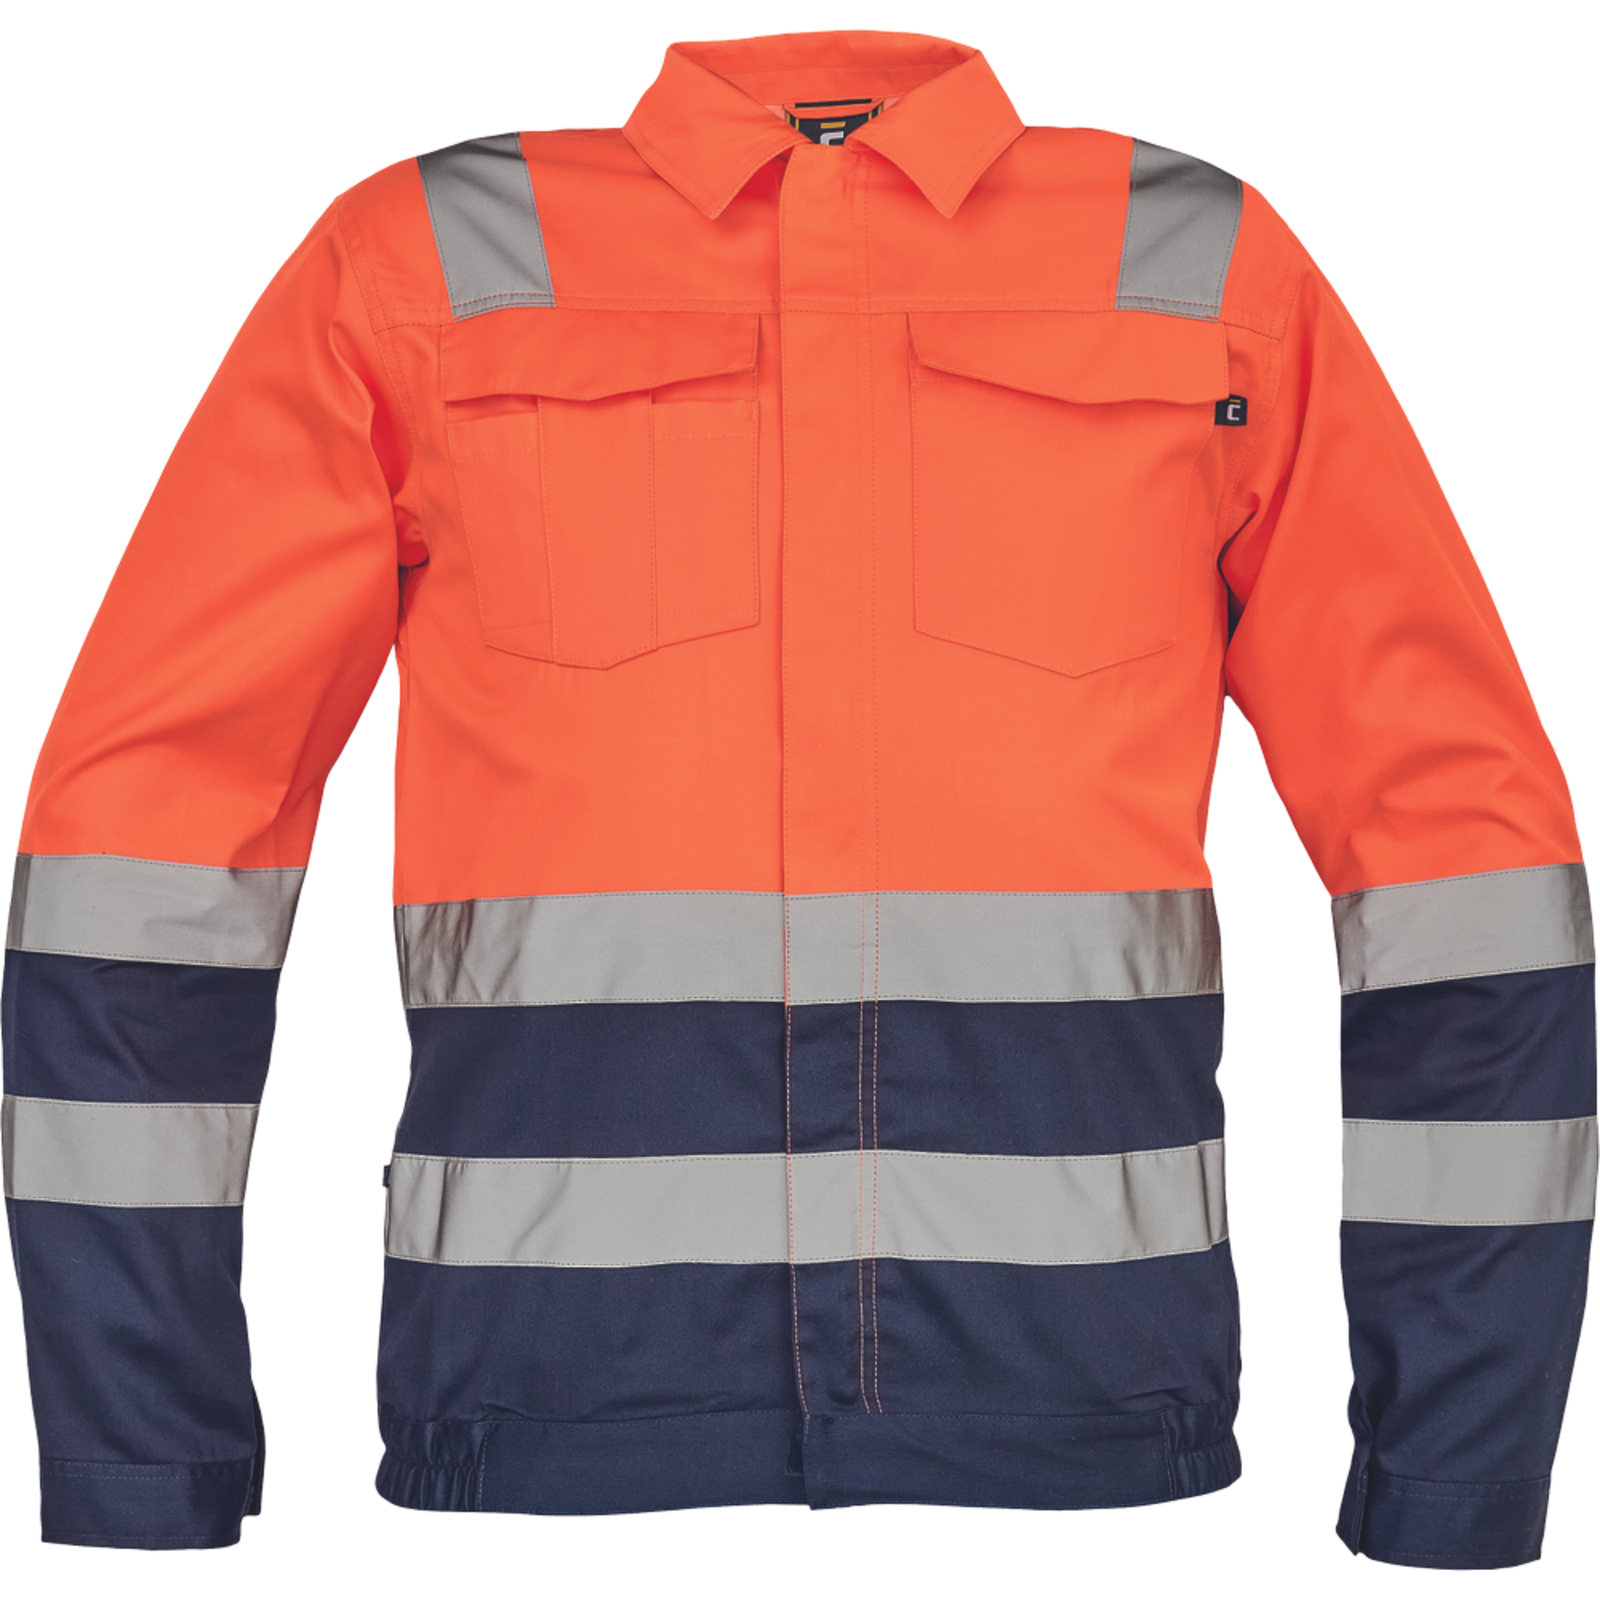 Reflexná pracovná bunda Cerva Valencia HV - veľkosť: 56, farba: oranžová/navy